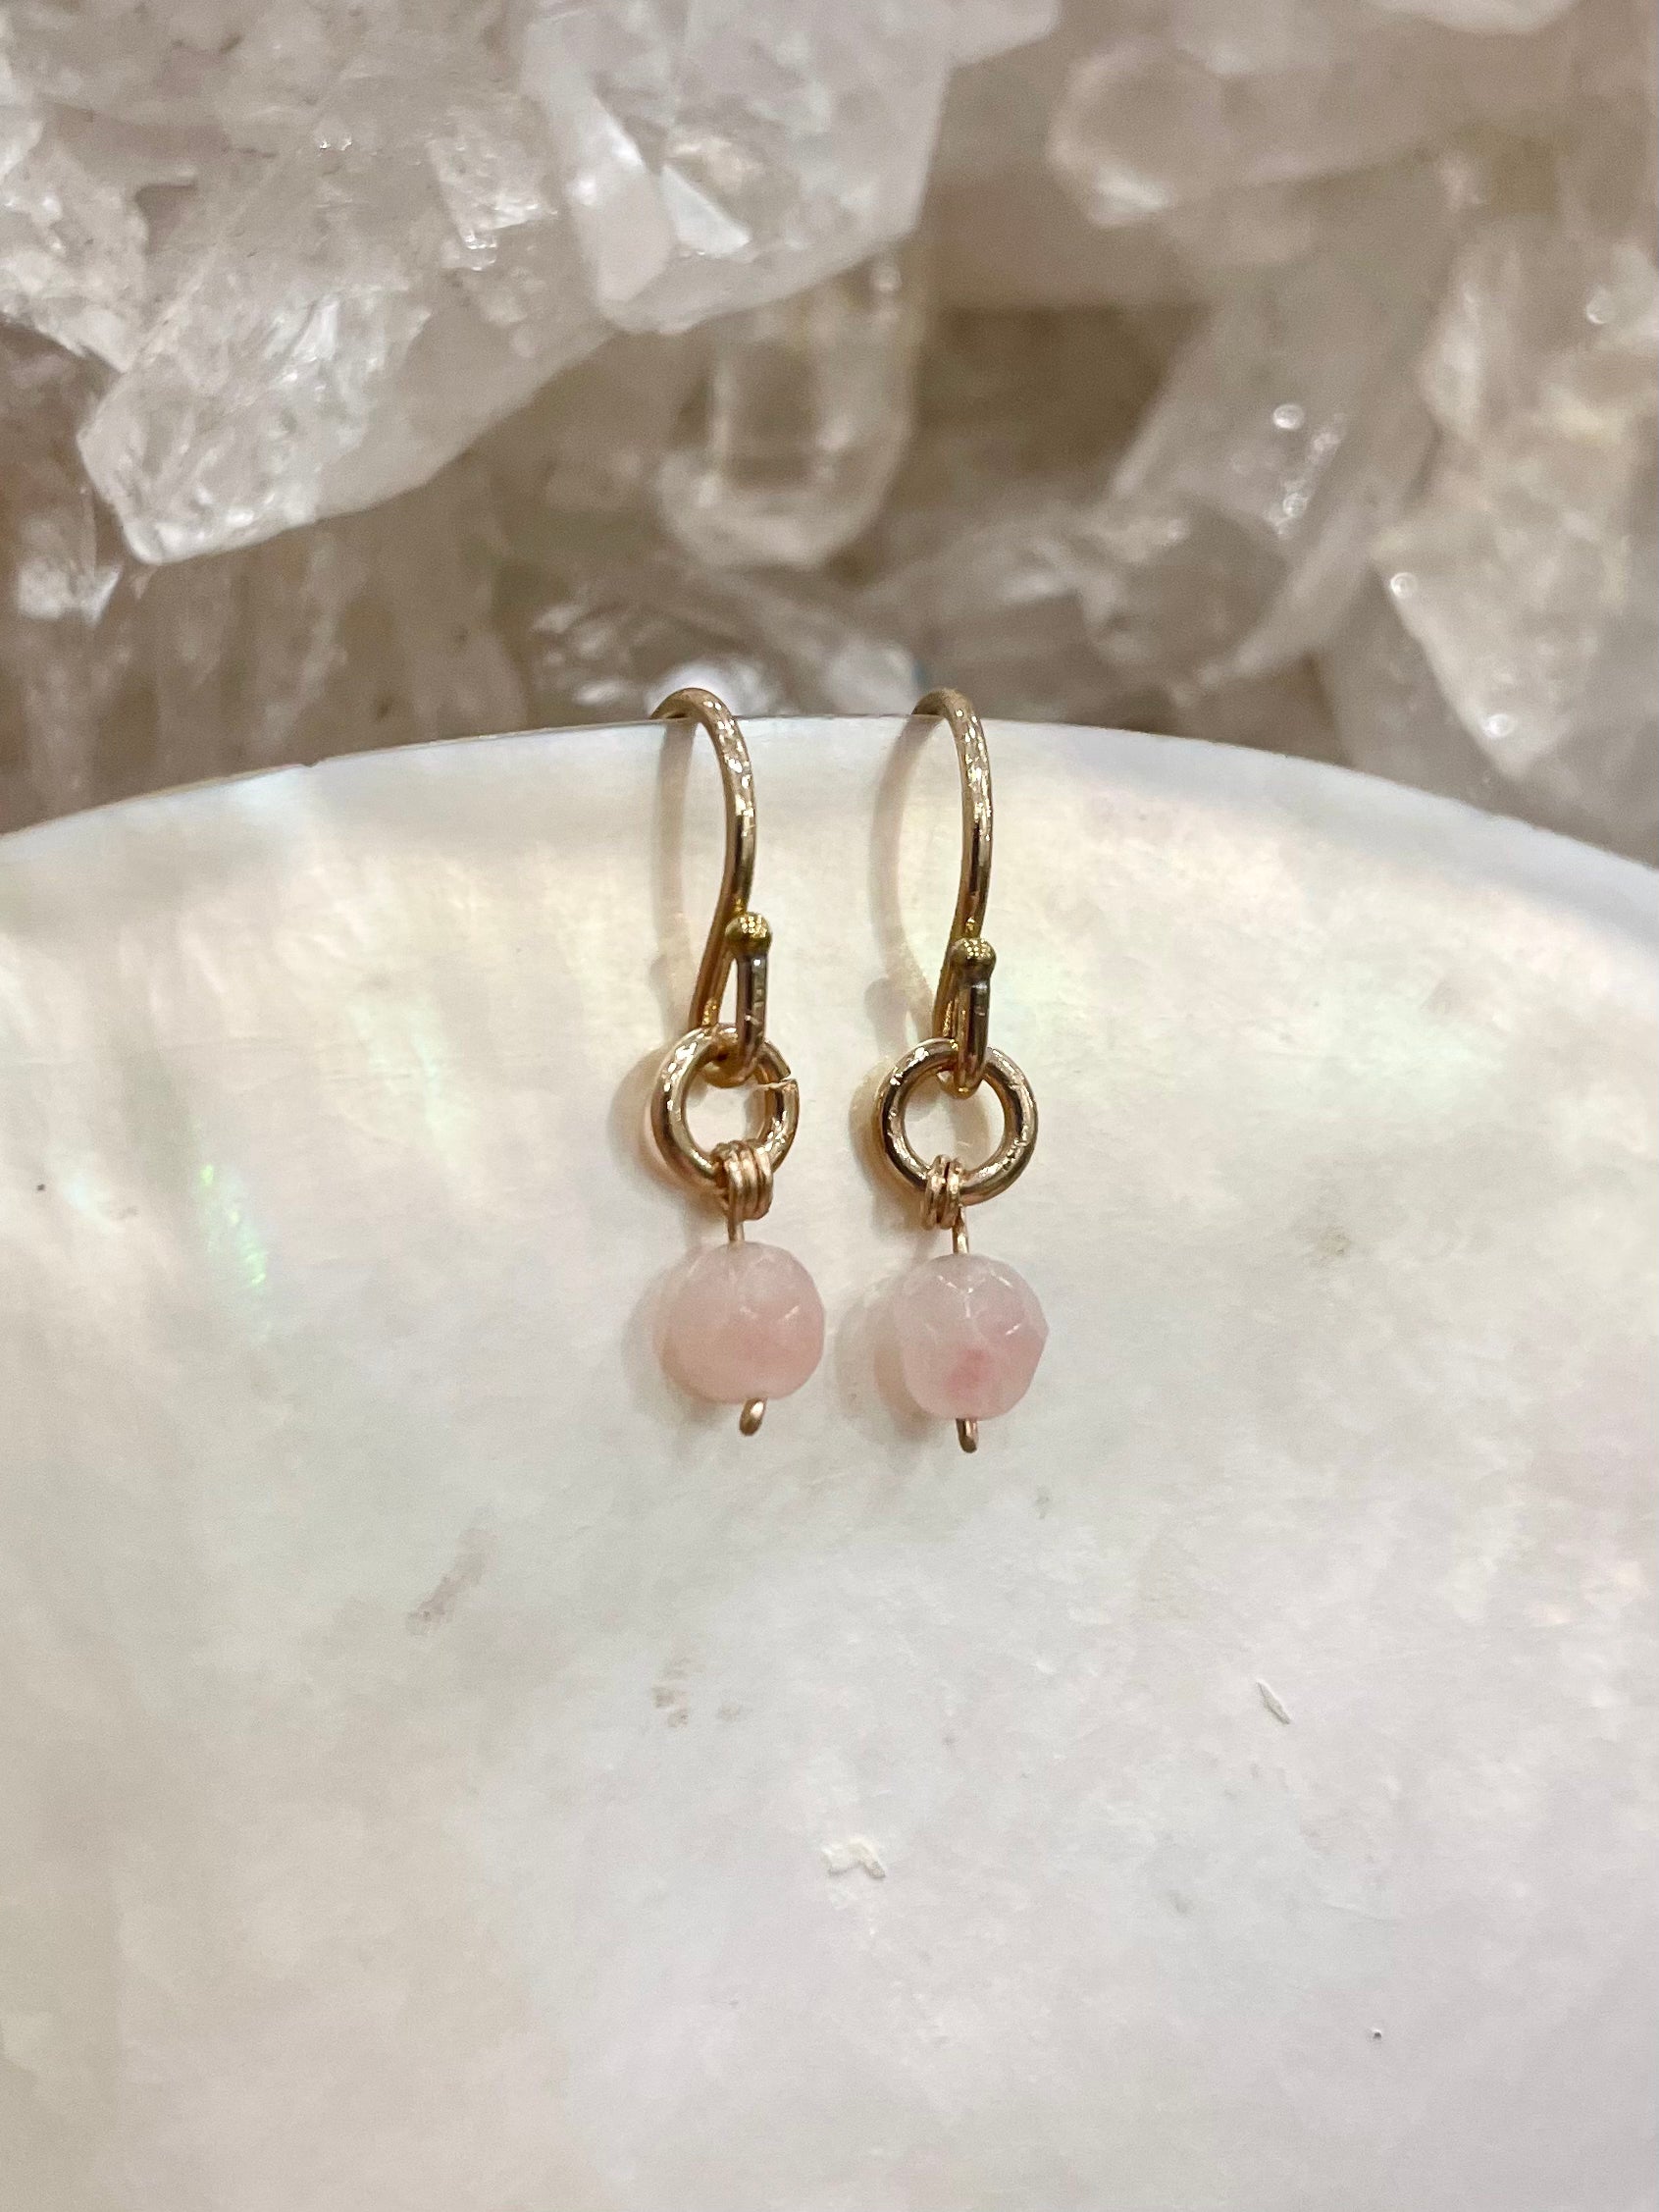 Mini gemstone hook earrings, pink stone earrings, pink opal earrings in gold